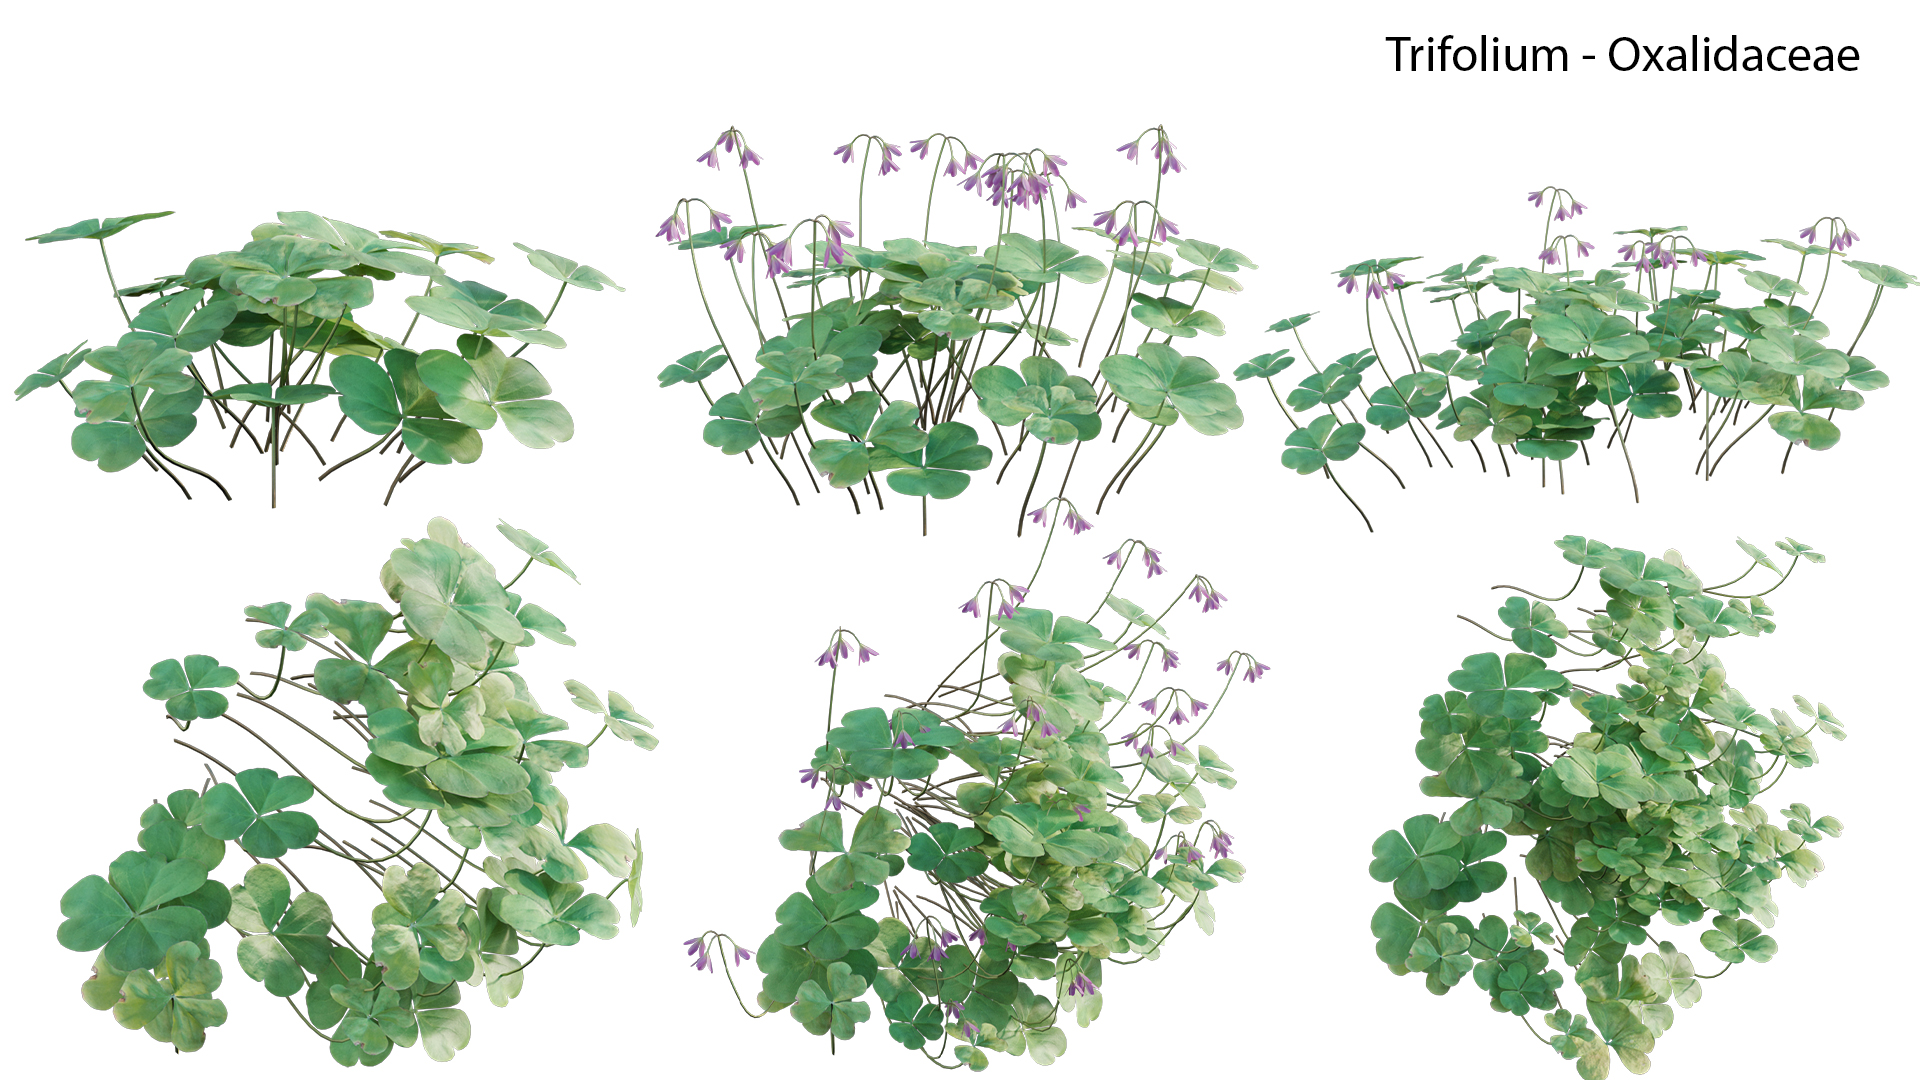 Trifolium - Oxalidaceae